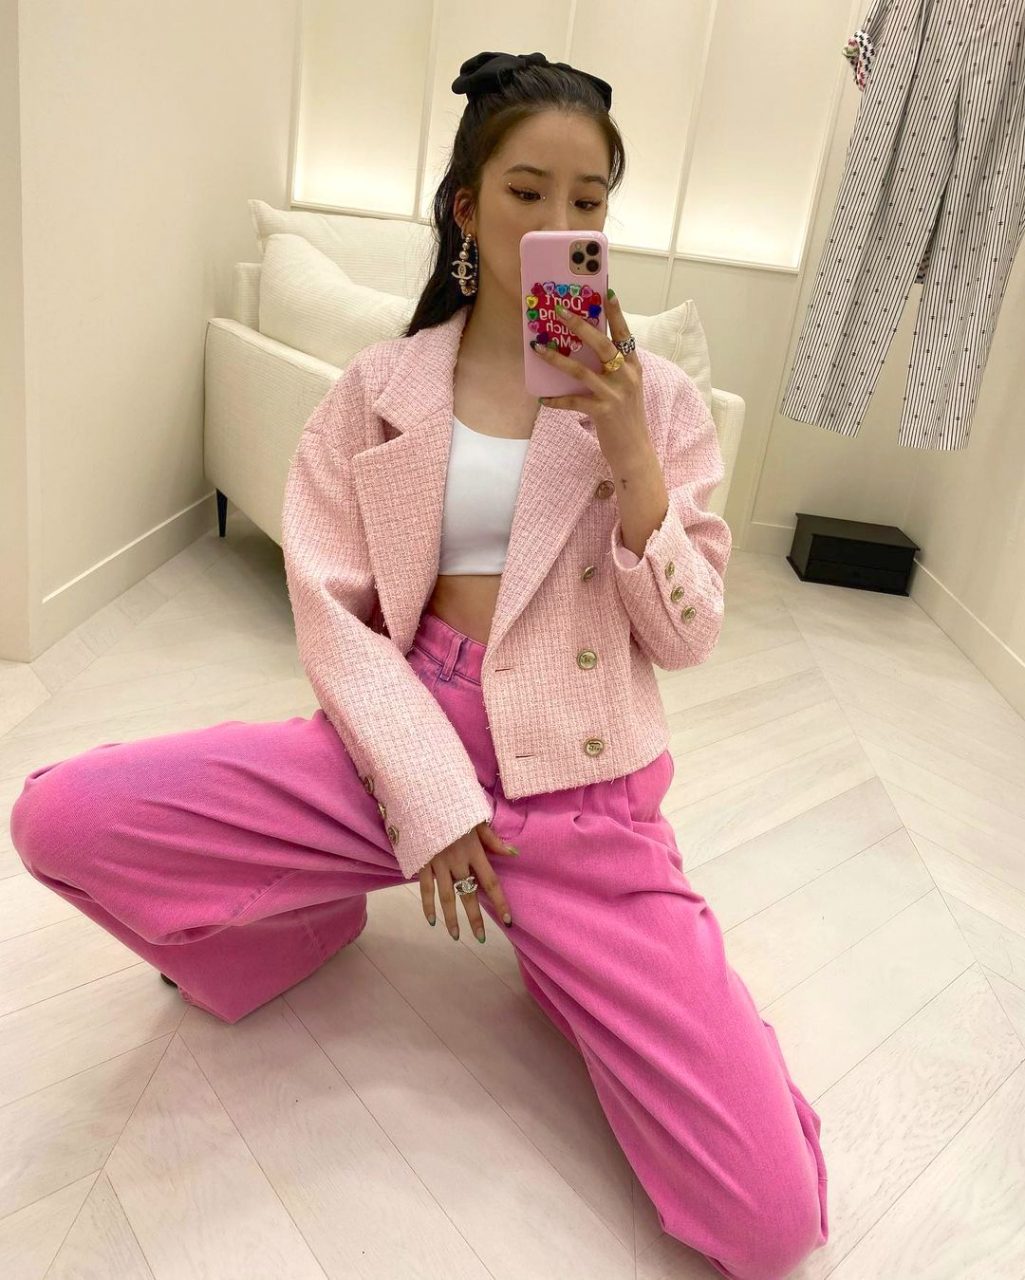 如何把粉紅色穿得高級 參考gigi Hadid Irene Kim 讓粉色成為秋冬提升氣質造型亮點 Vogue Hong Kong